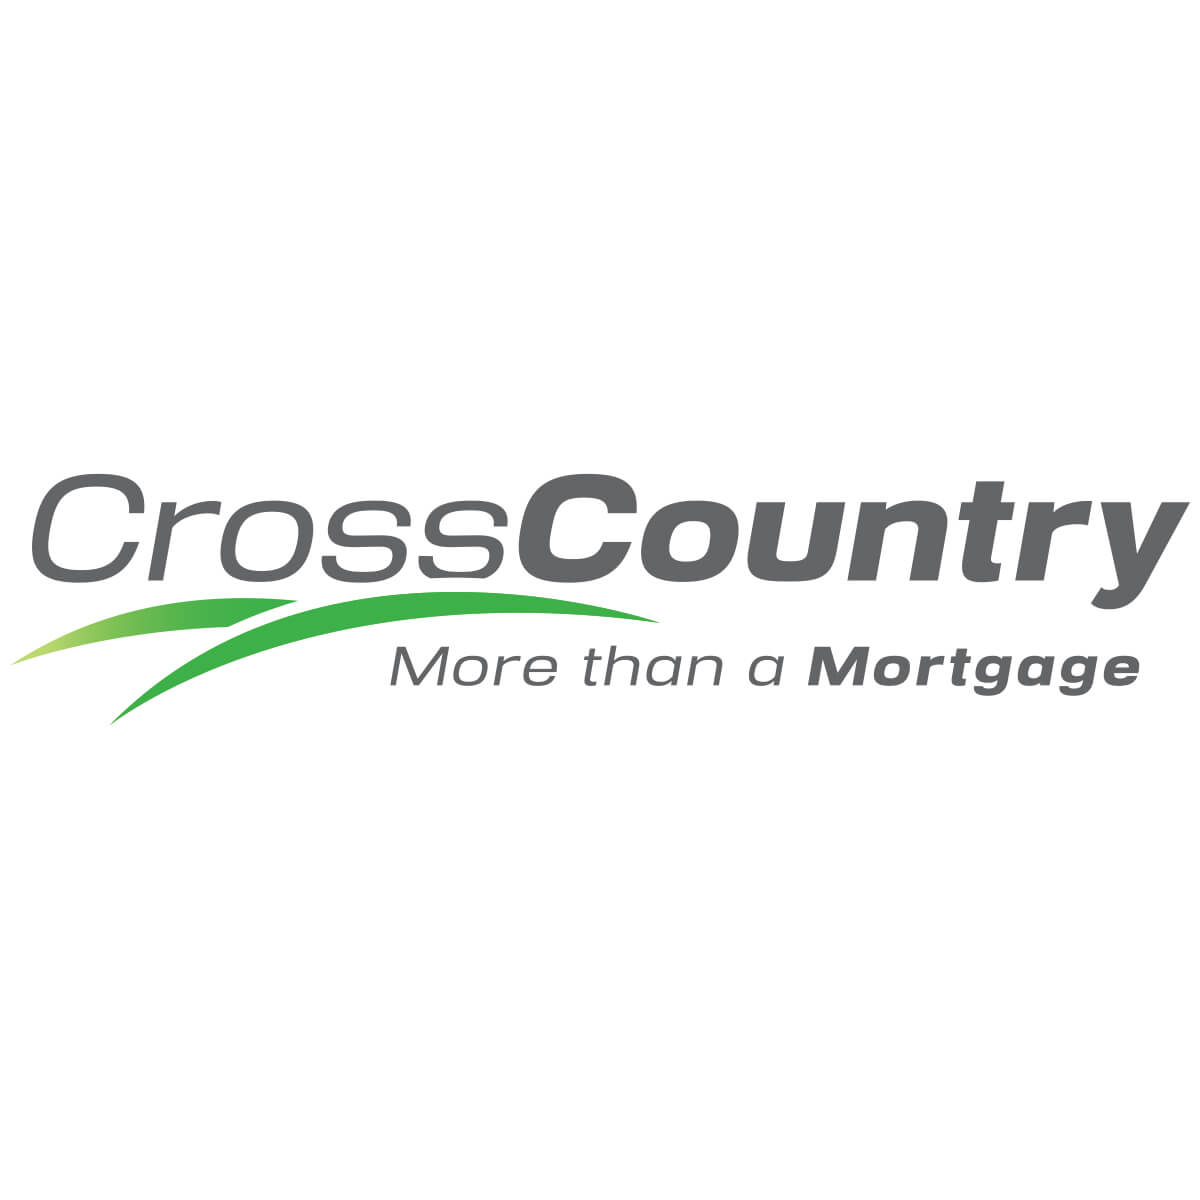 Mortgage Logo - Home, FHA, VA, Refinance & Jumbo Loans. CrossCountry Mortgage, Inc